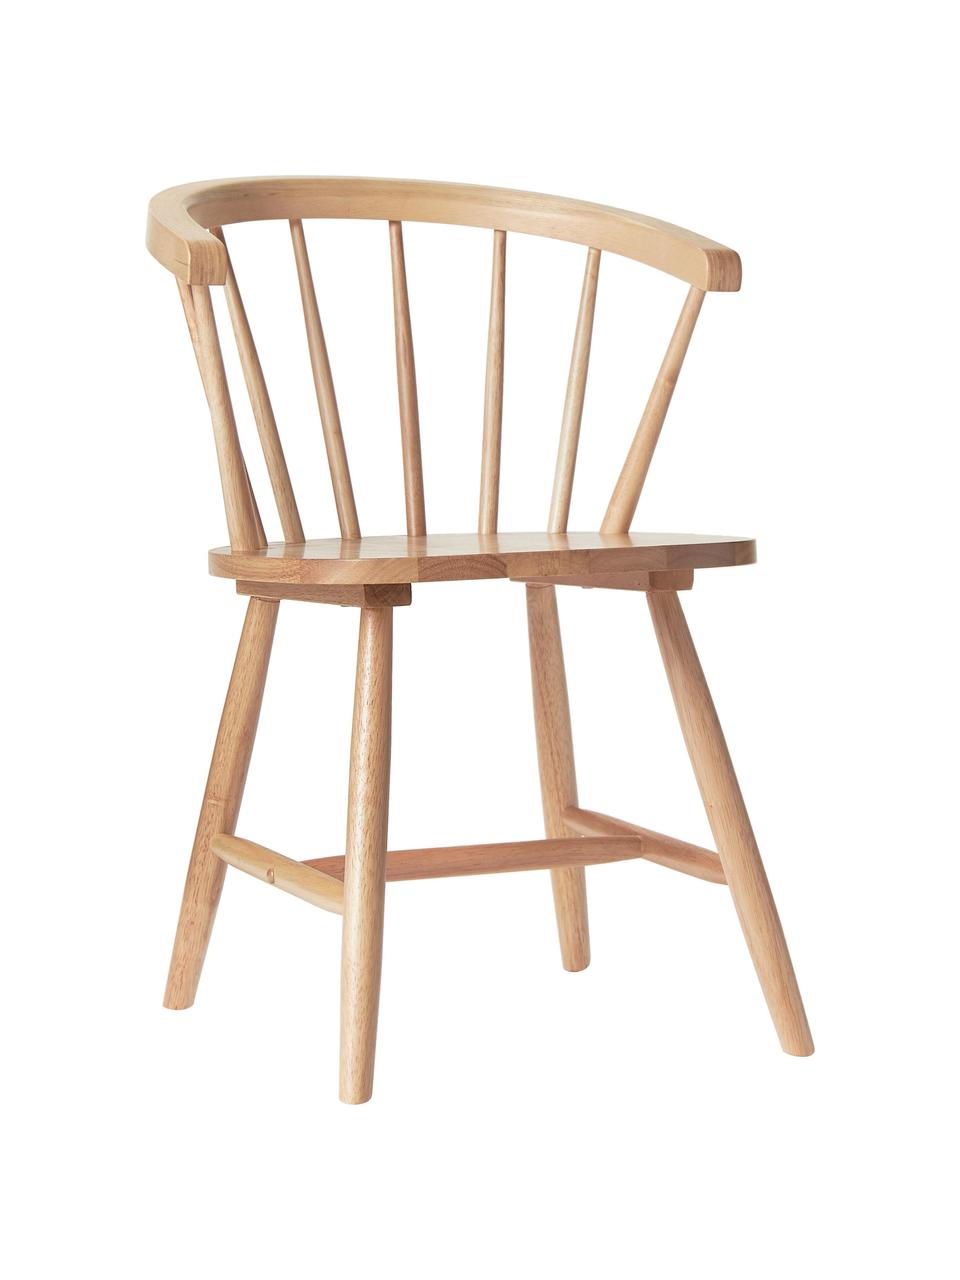 Krzesło z drewna w stylu windsor Megan, 2 szt., Drewno kauczukowe lakierowane, Drewno kauczukowe, S 53 x G 52 cm